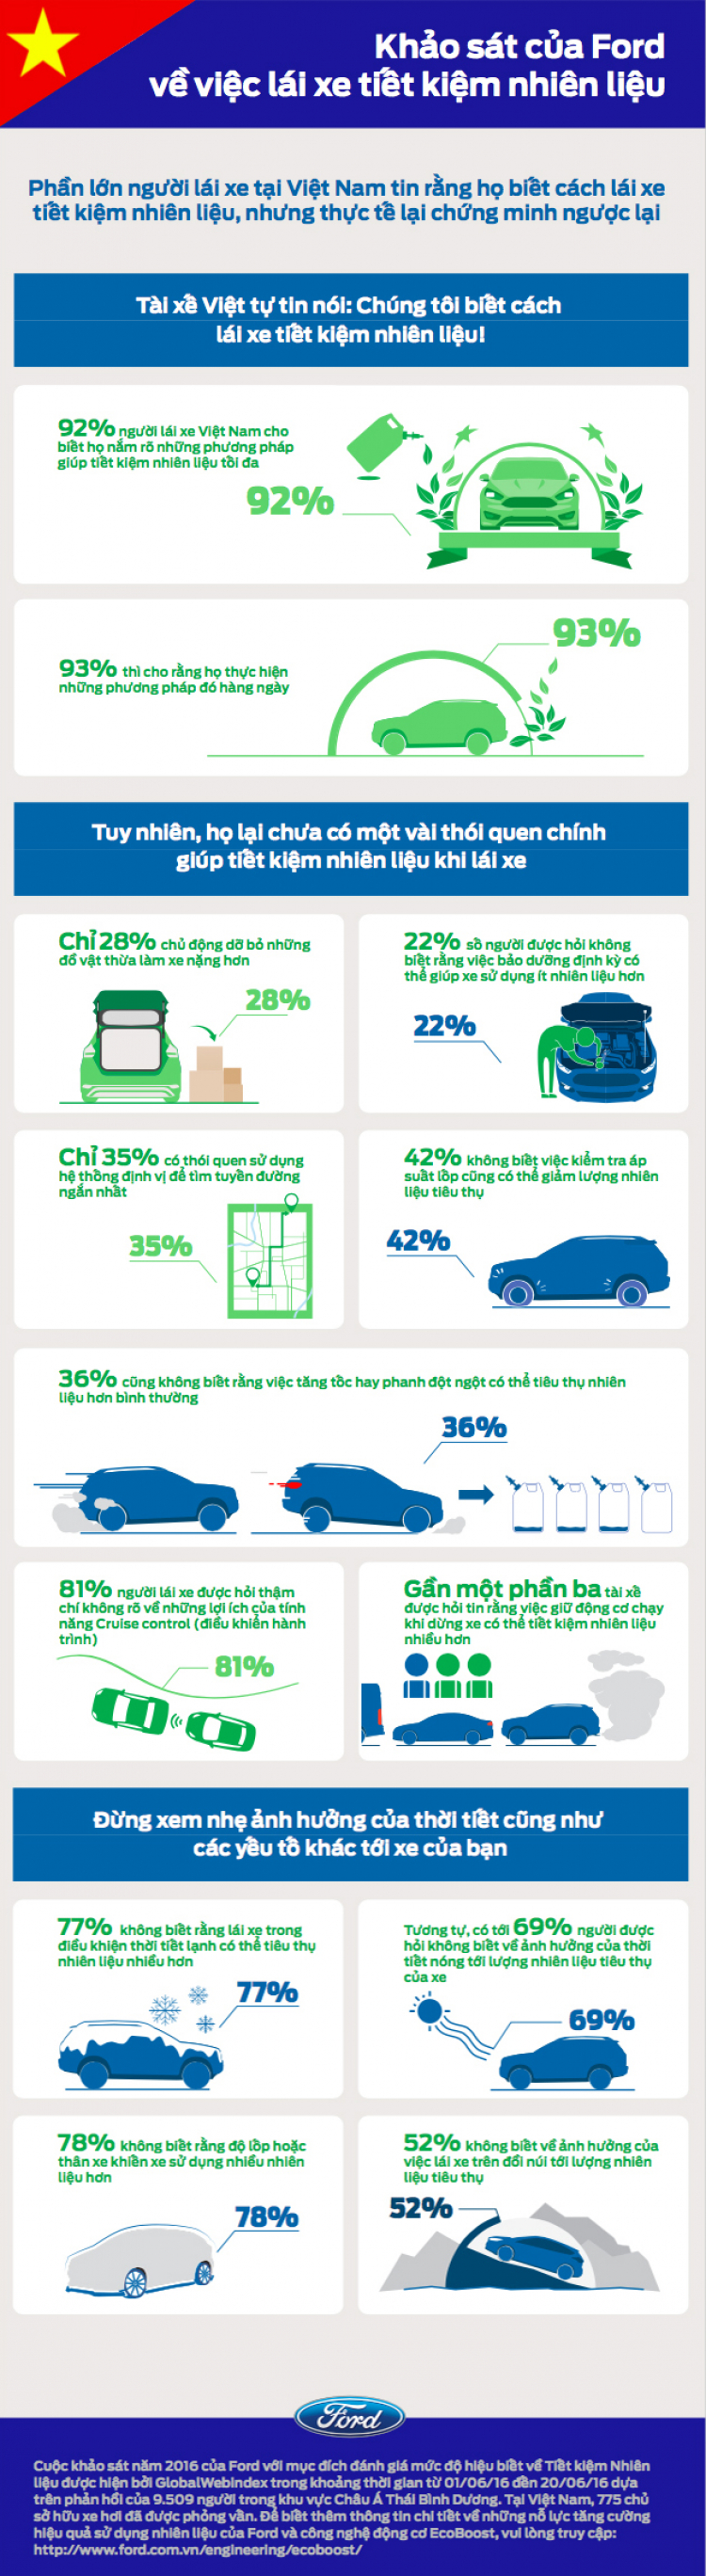 Nhiều người Việt chưa biết cách lái xe tiết kiệm nhiên liệu